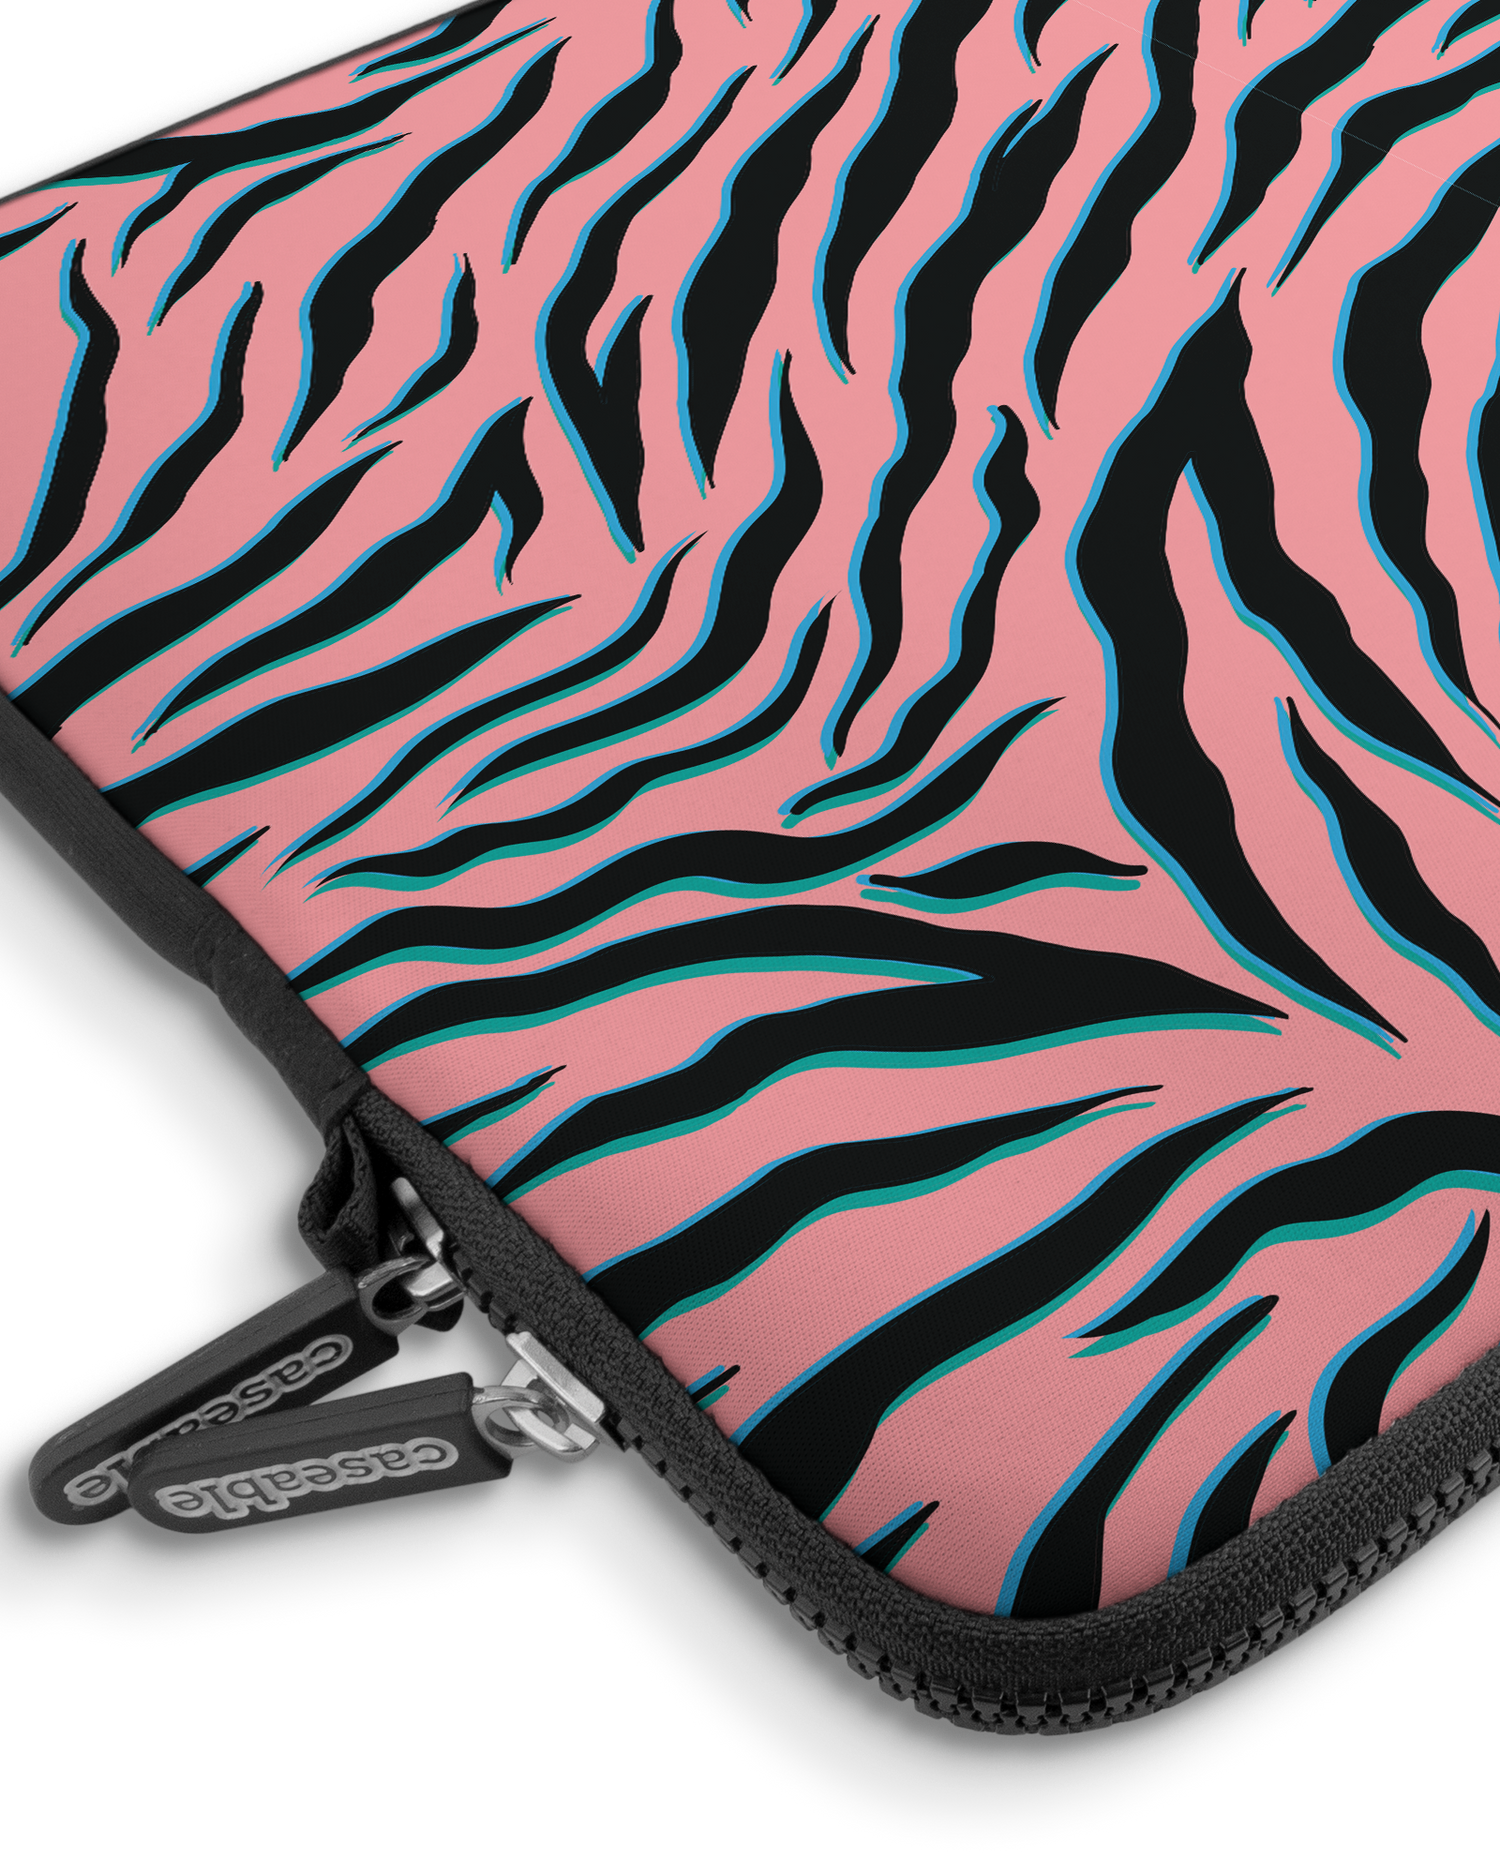 Pink Zebra Premium Laptoptasche 15 Zoll mit Gerät im Inneren